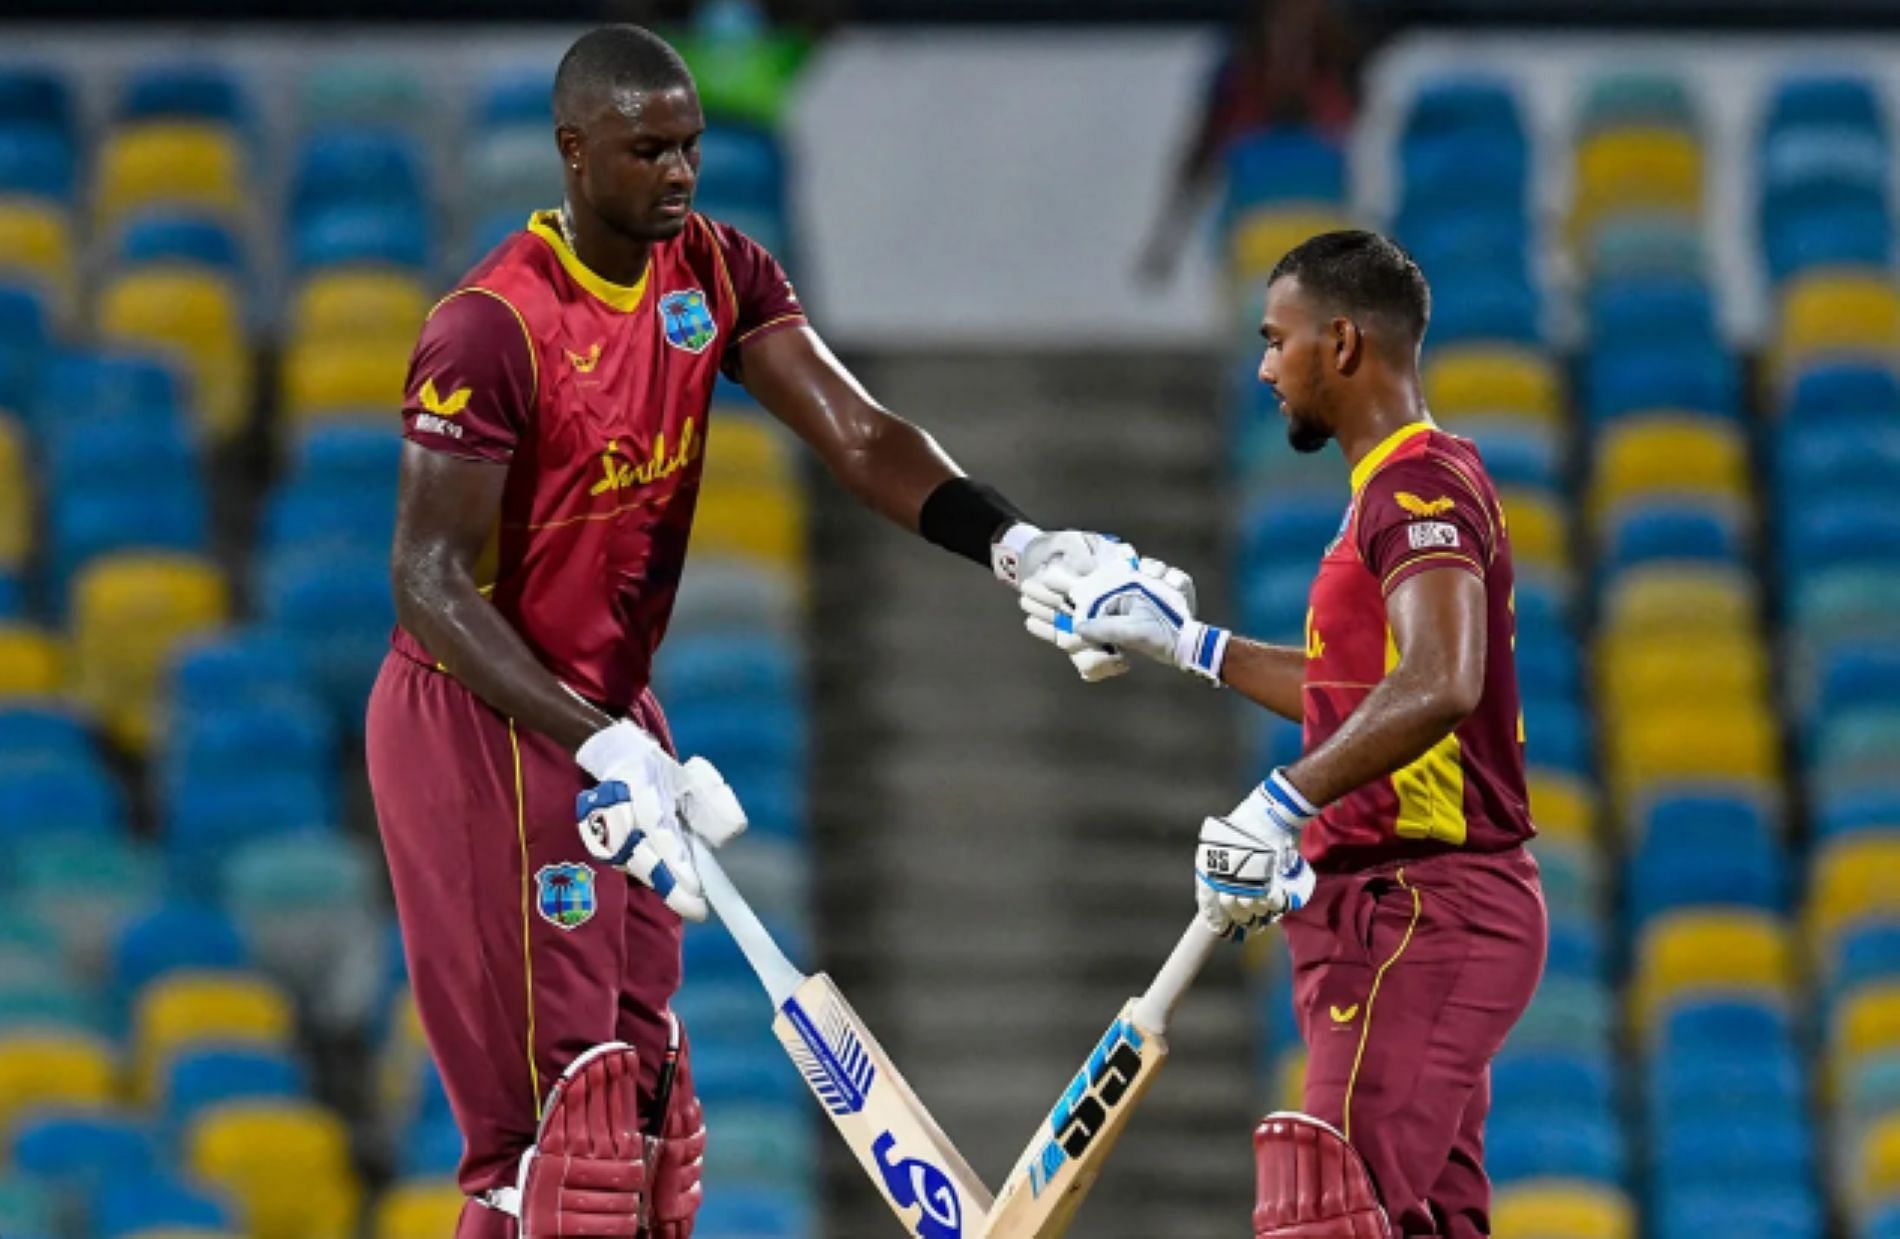 Pooran and Holder played in West Indies